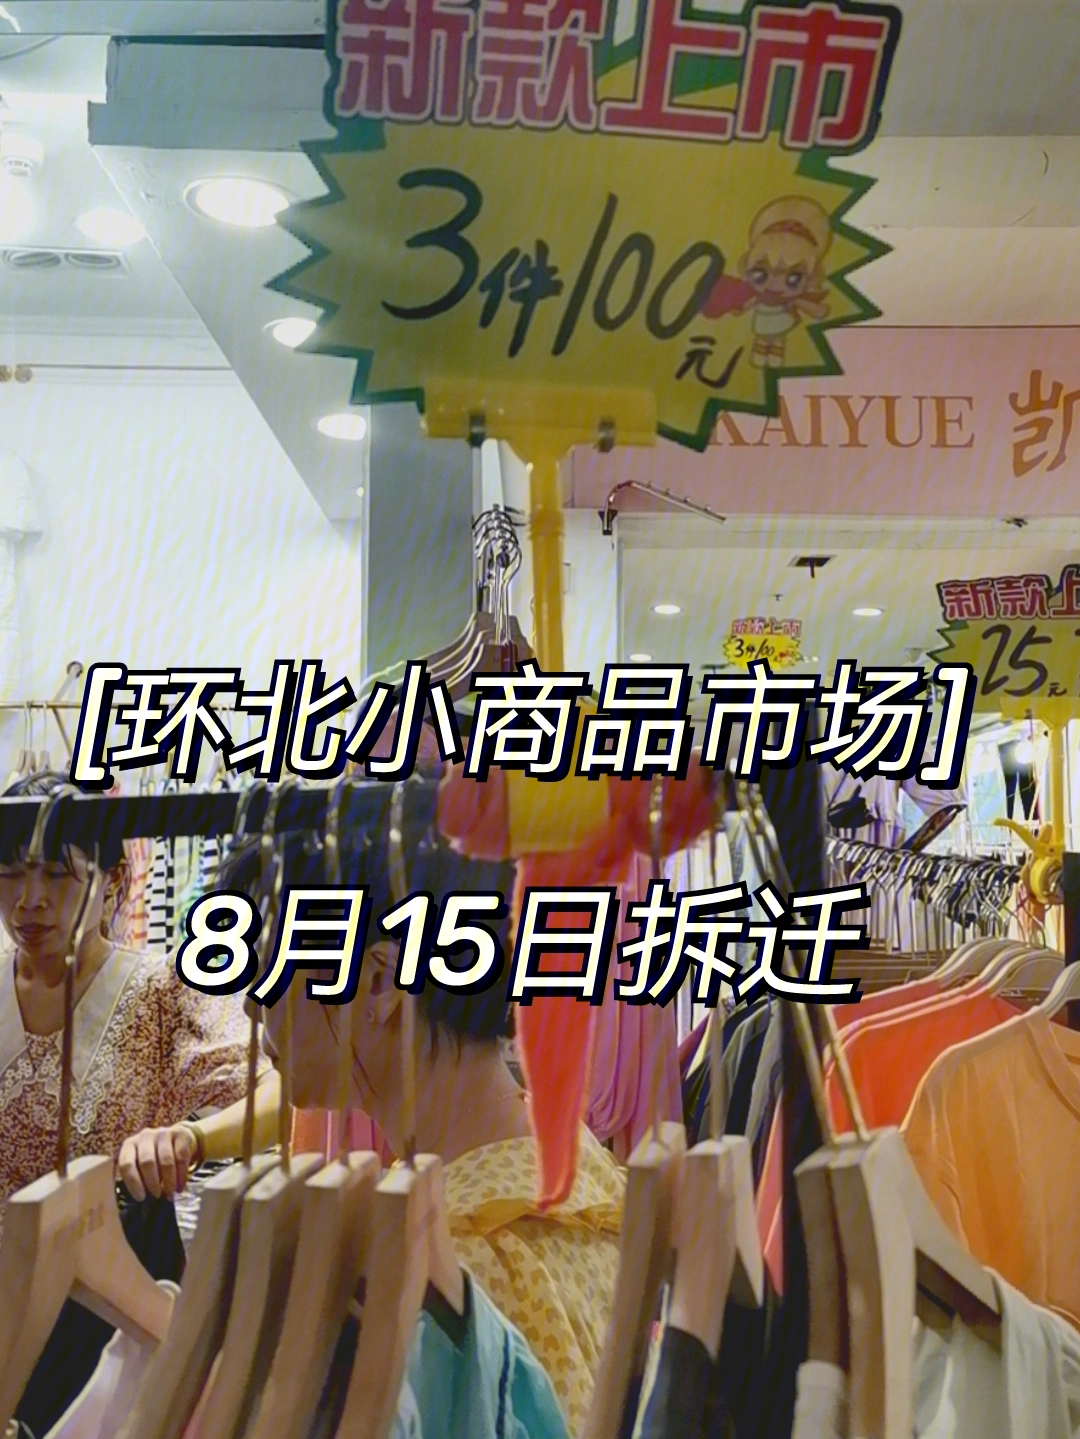 得到小姐妹情报,杭州环北小商品市场,8月15号之前要拆迁,衣服清仓大